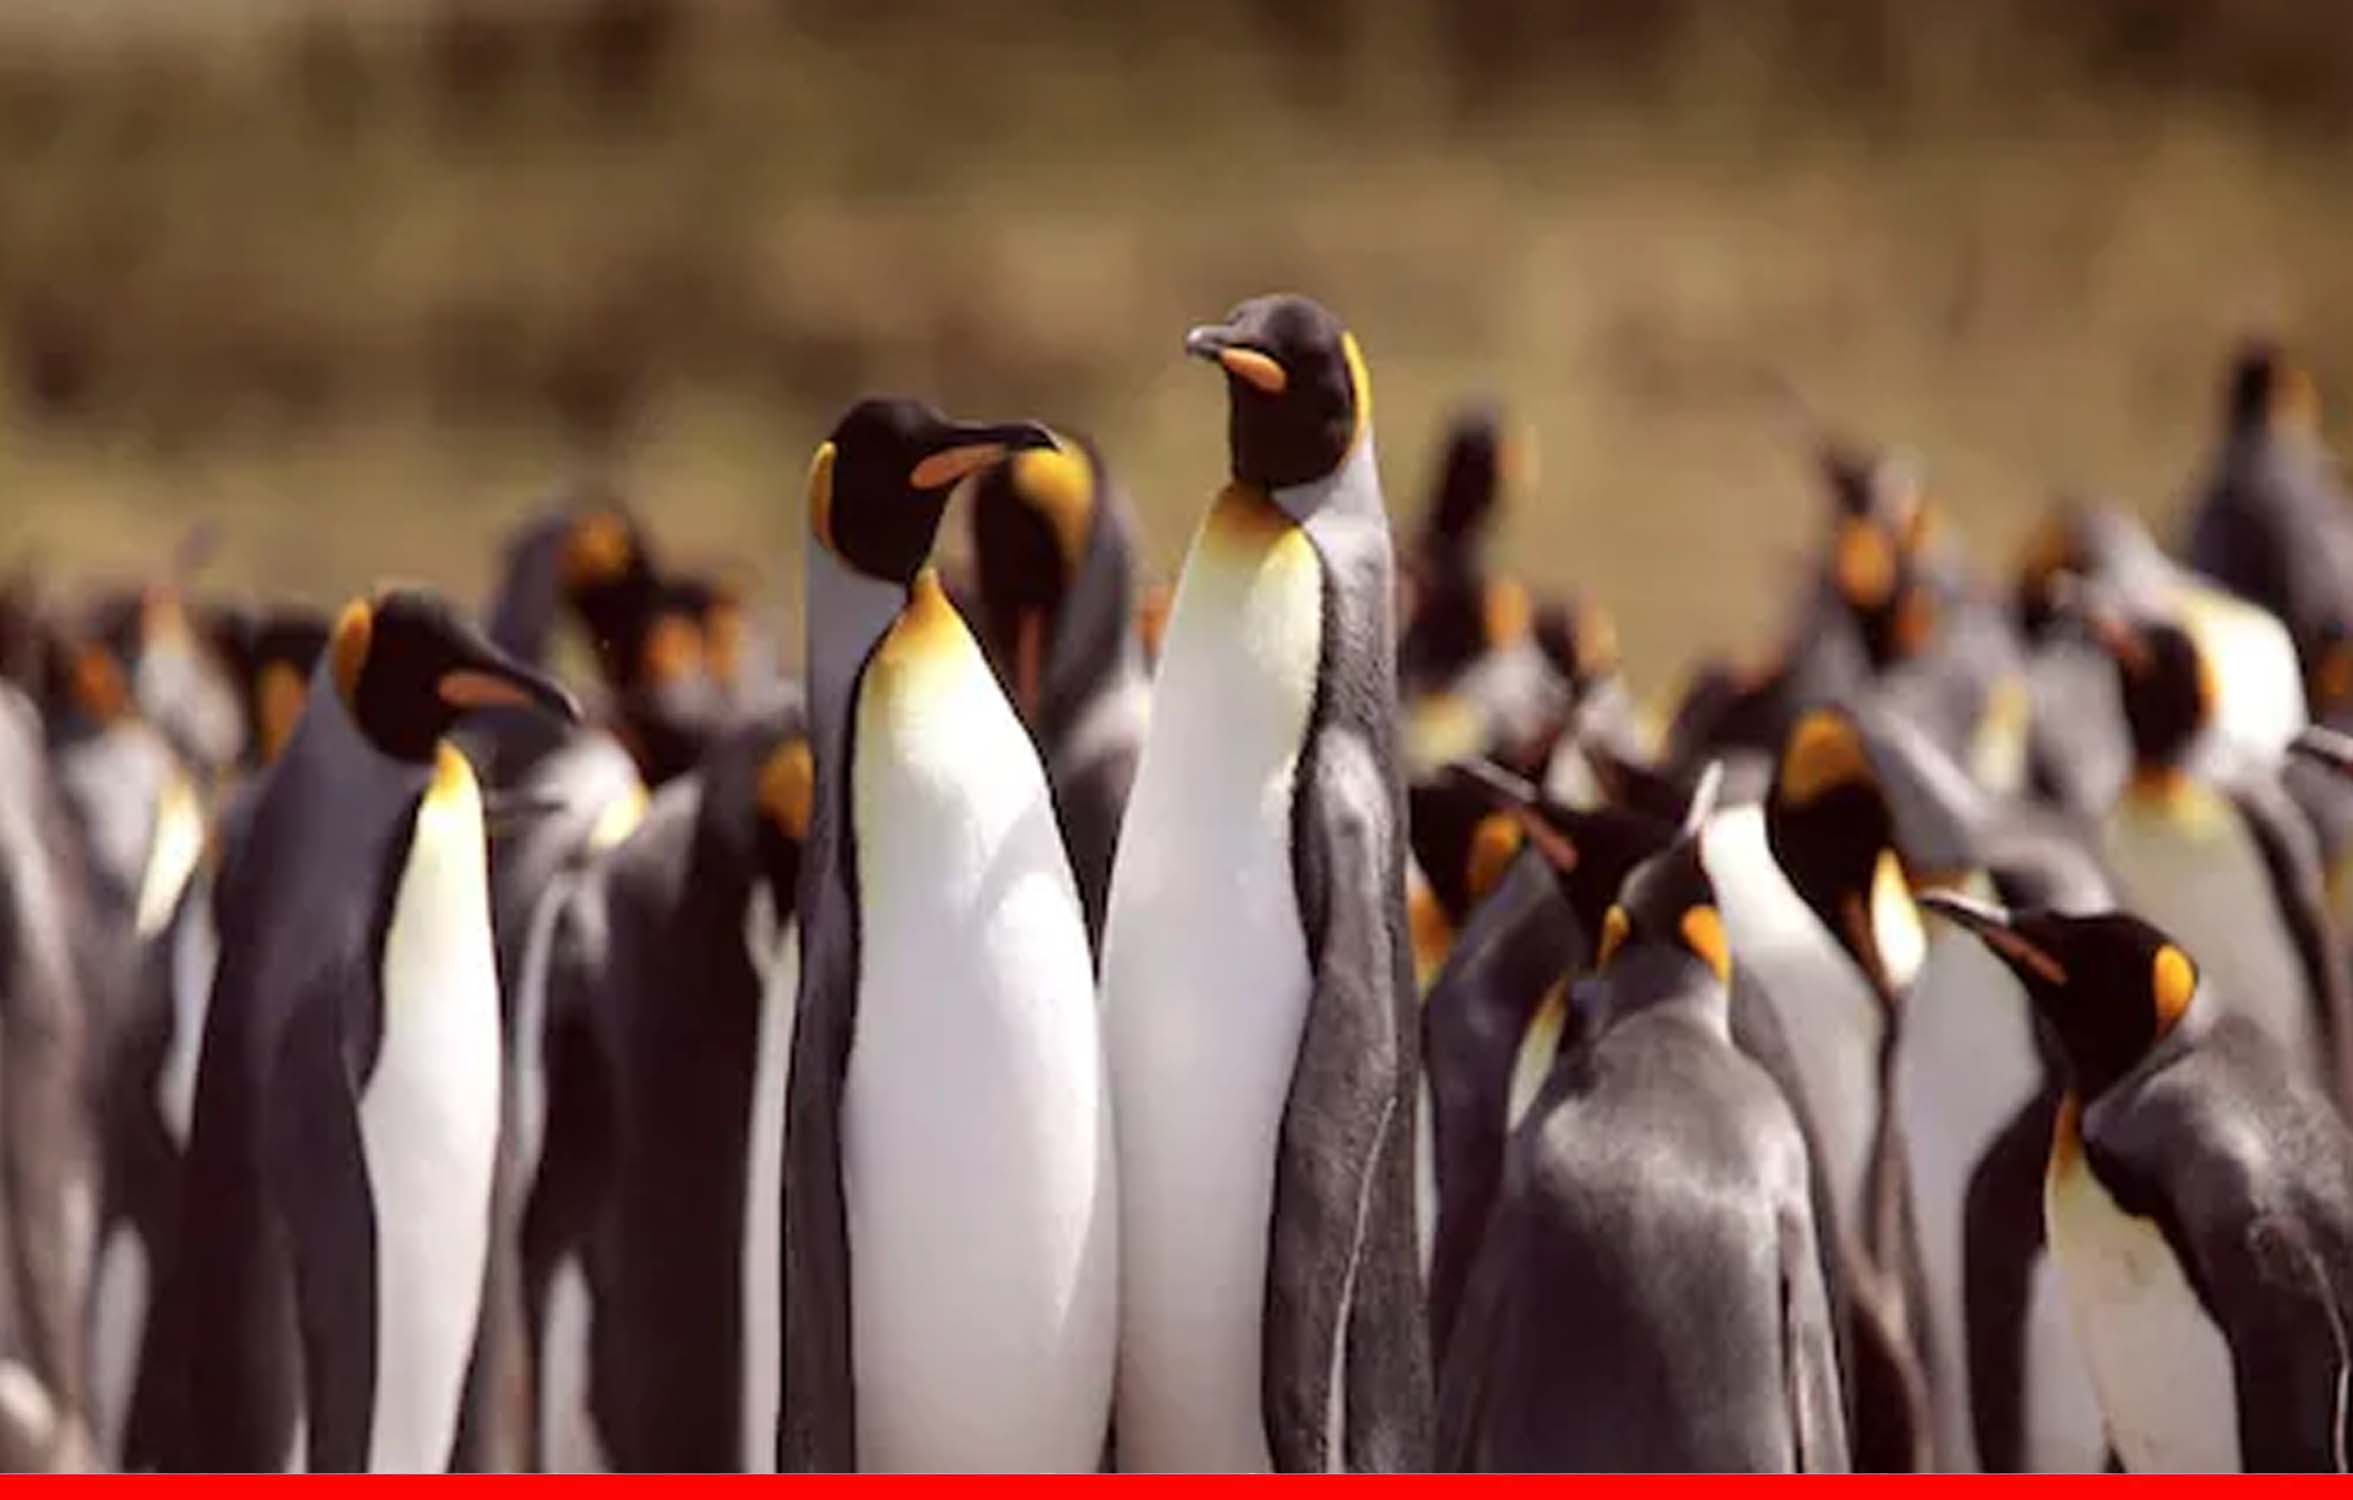 मधुमक्खियों के झुंड ने बोला हमला, लुप्तप्राय 63 पेंगुइन की हो गई मौत